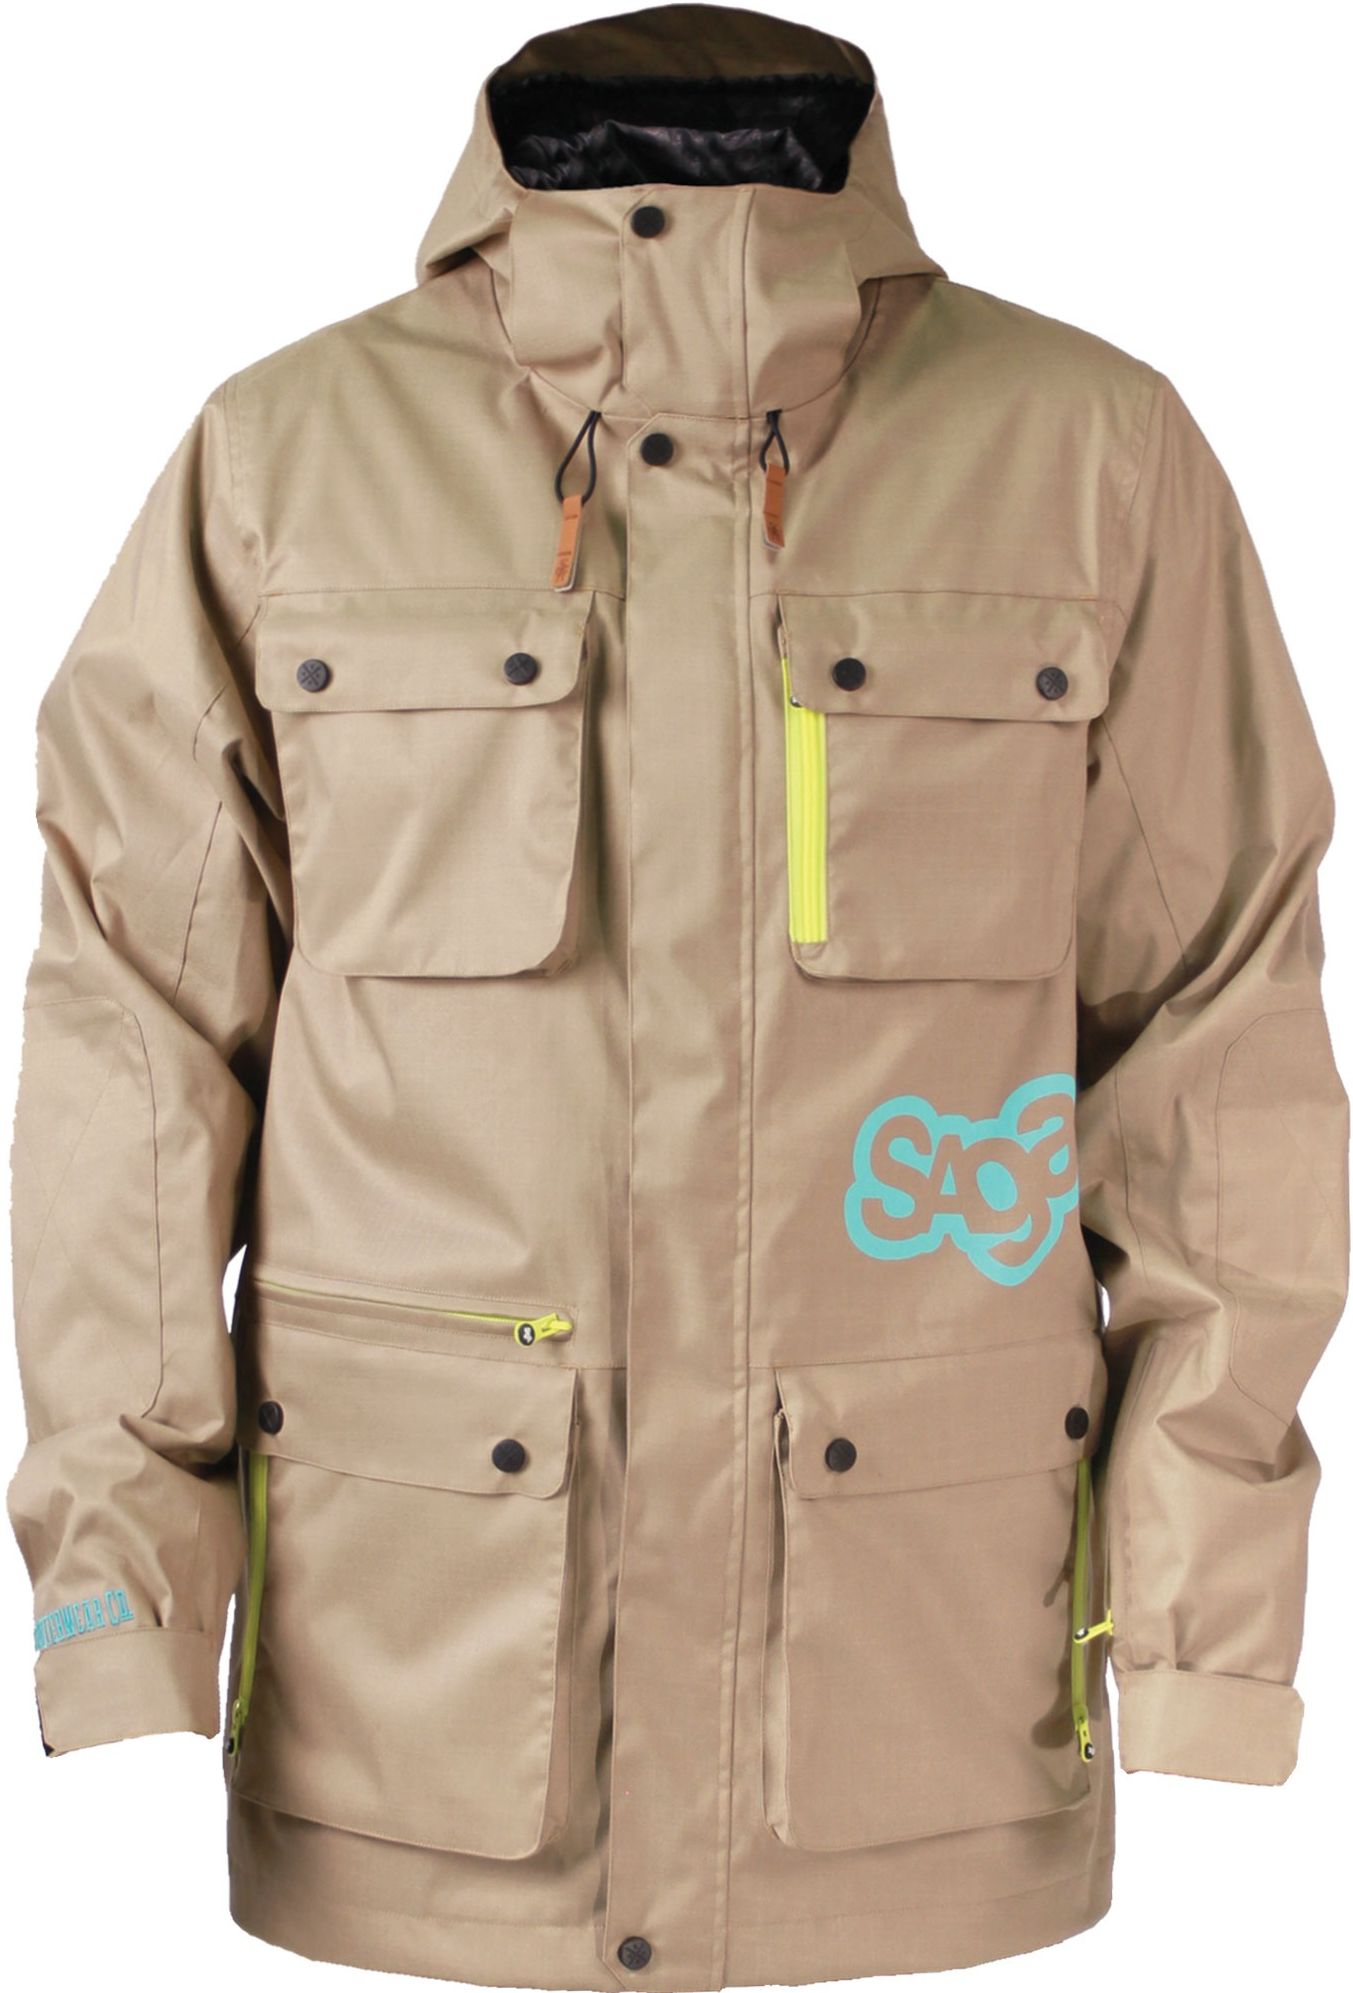 Чоловіча куртка для сноуборду Saga Anomie 2L Beaver Fur 2015 (S)